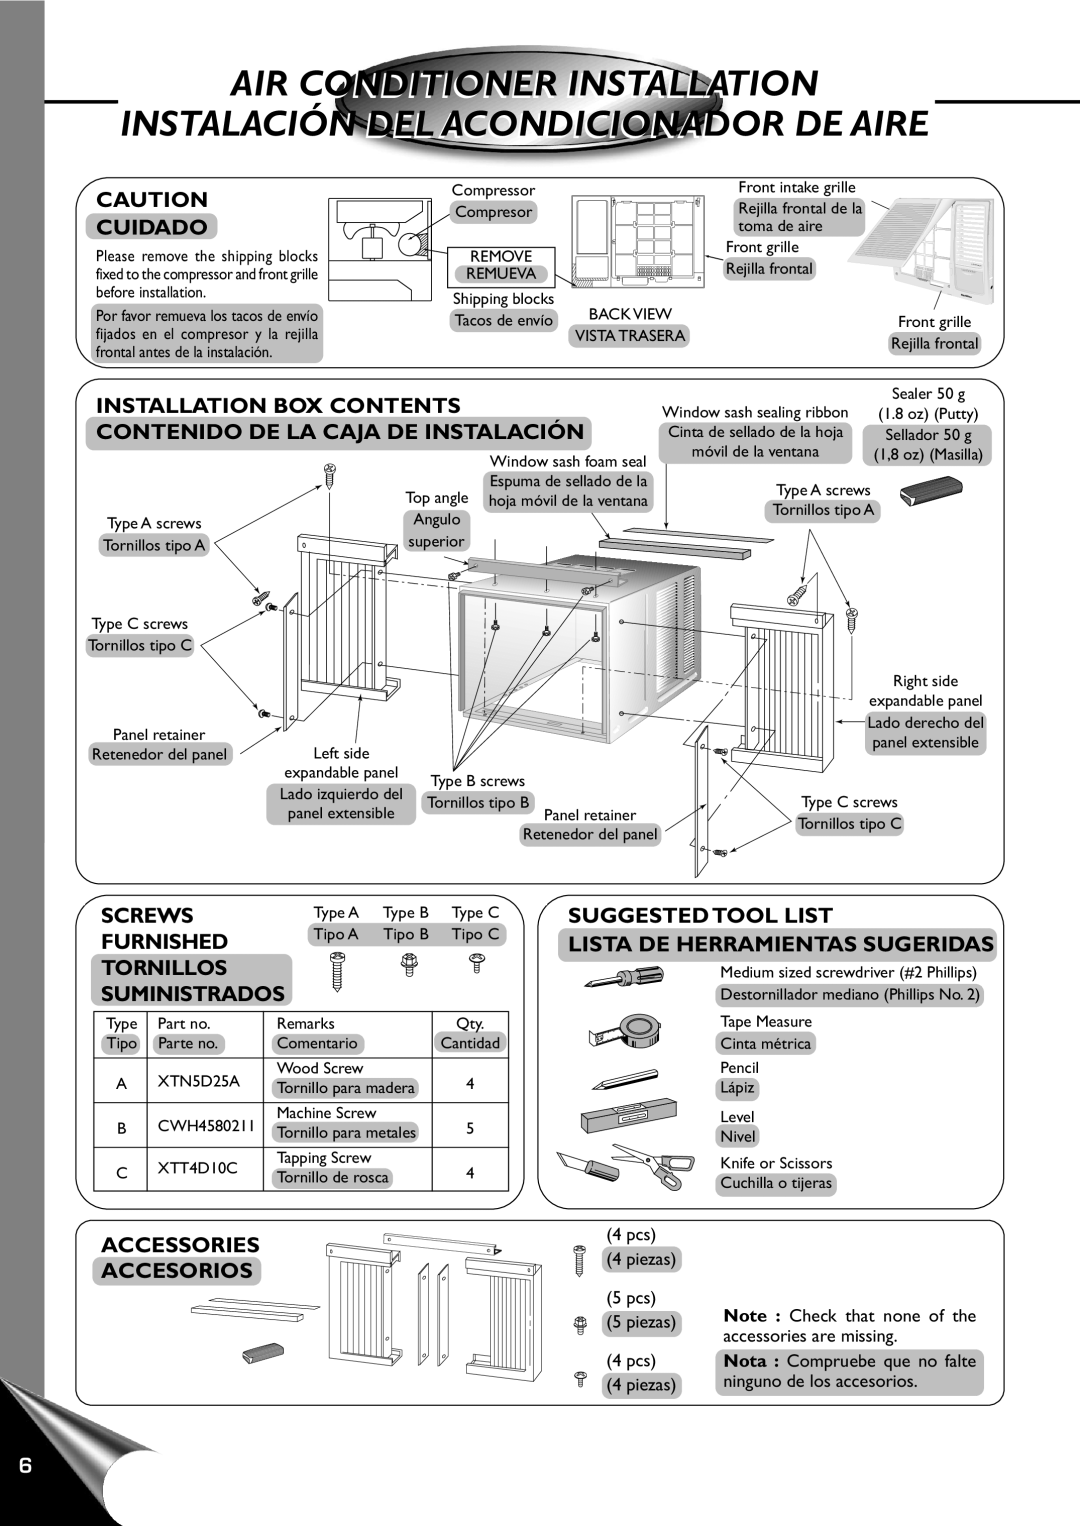 Quasar HQ-2101RH Air Conditioner Installation, Instalación Del Acondicionador De Aire, Installation Box Contents, Screws 